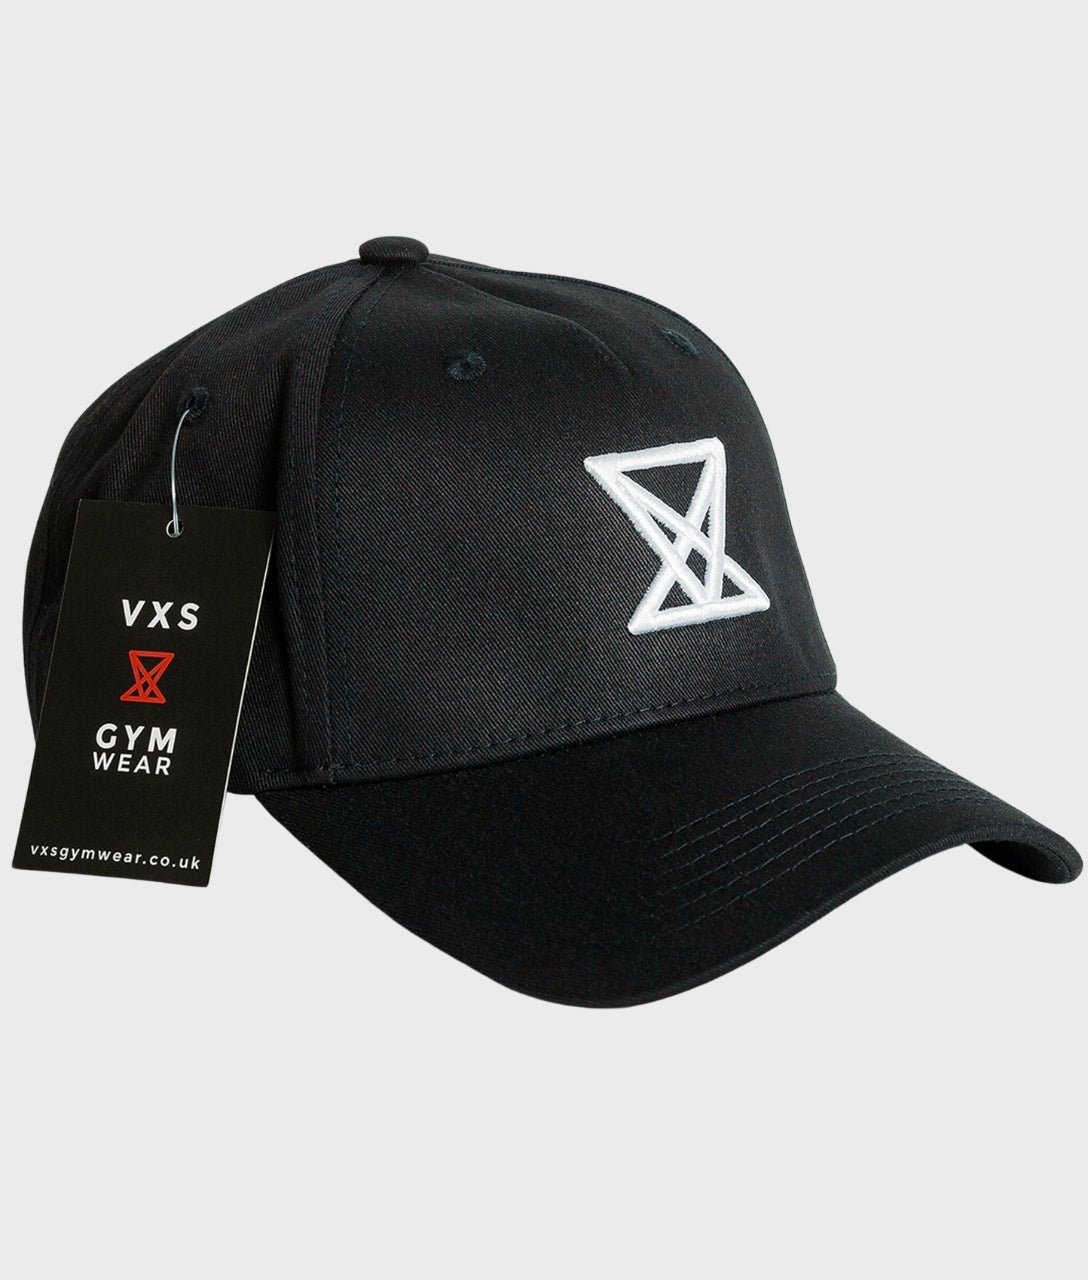 Baseball Cap [Black] - VXS GYM WEAR